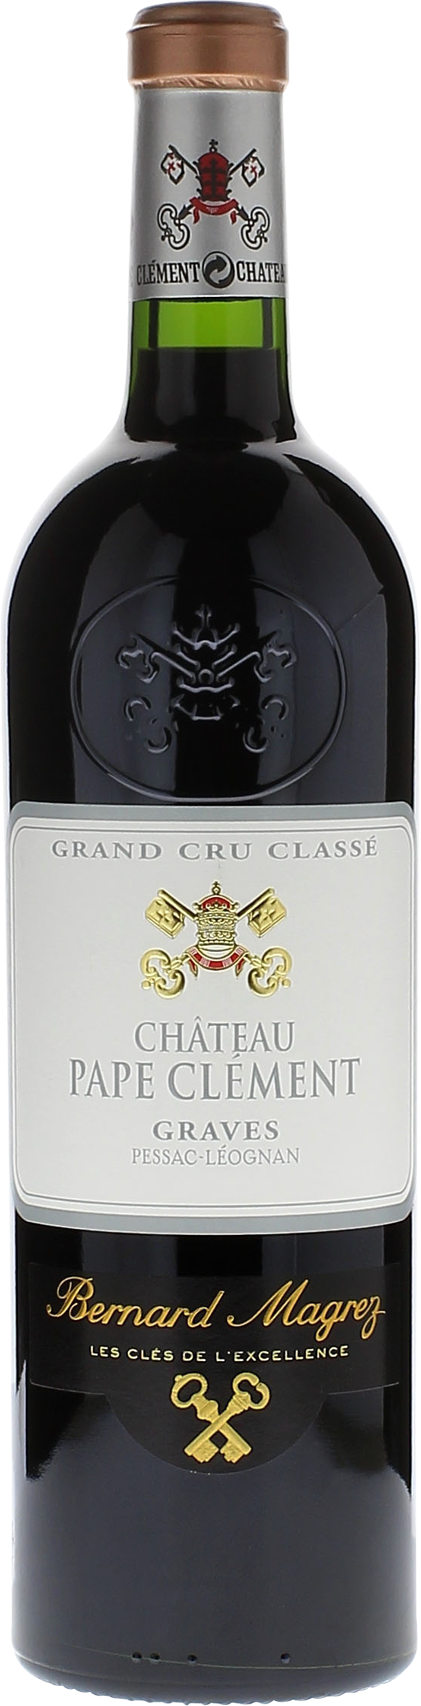 Pape clement rouge 1996 Grand Cru Class Pessac-Lognan, Bordeaux rouge